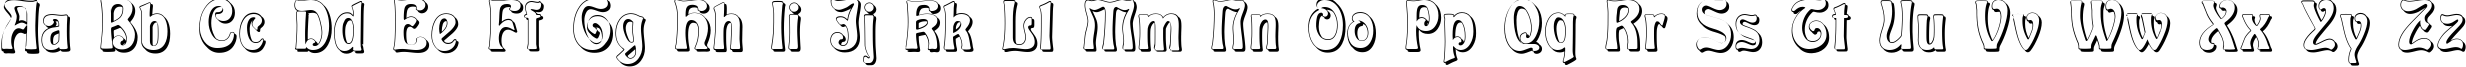 Пример написания английского алфавита шрифтом Baldur Shadow